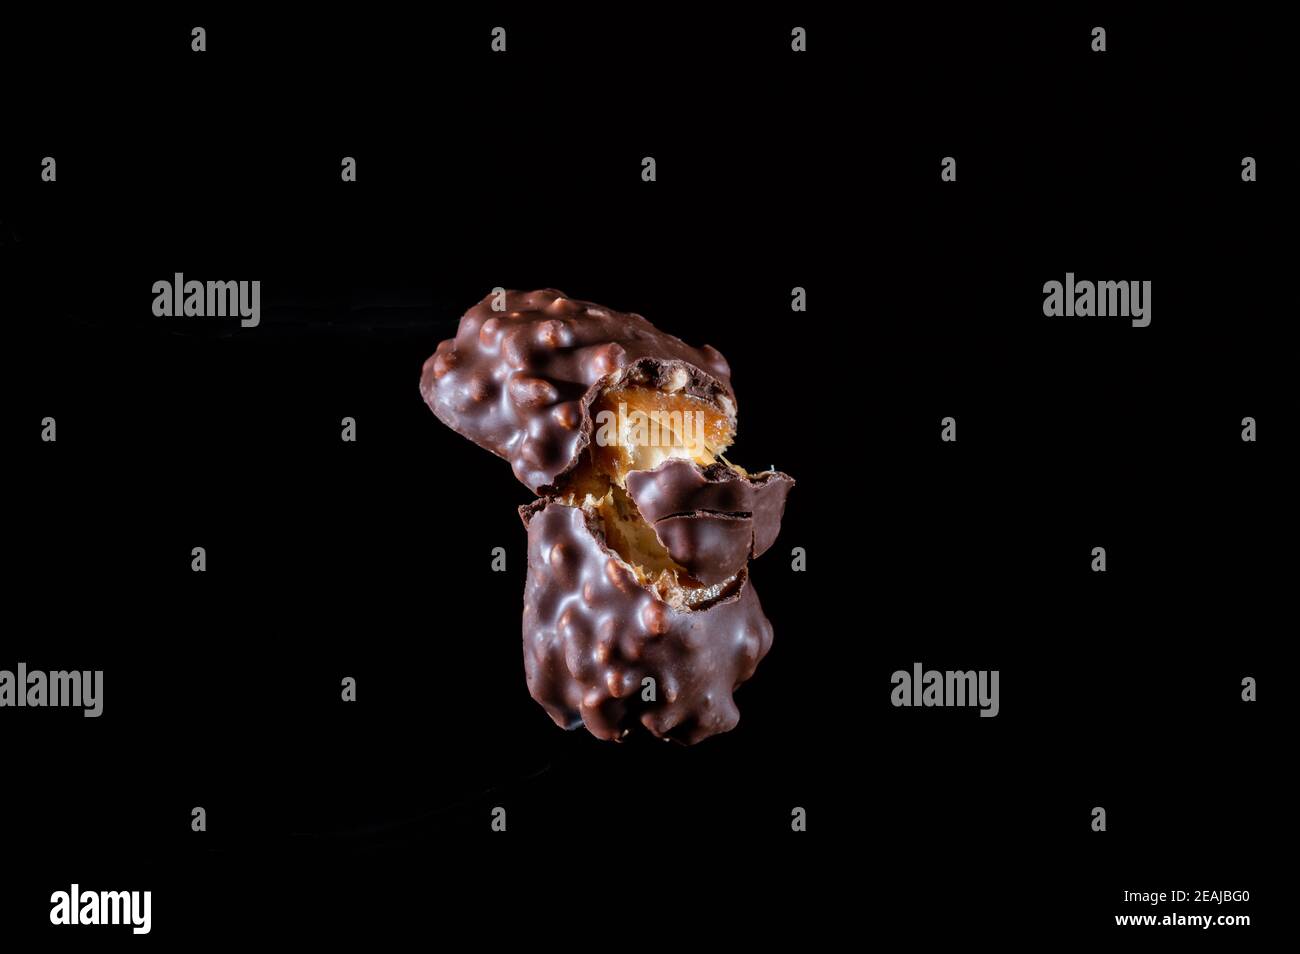 Vista laterale di una barretta di cioccolato. Barretta di cioccolato con caramello. Caramella al cioccolato. Vista laterale. Foto Stock